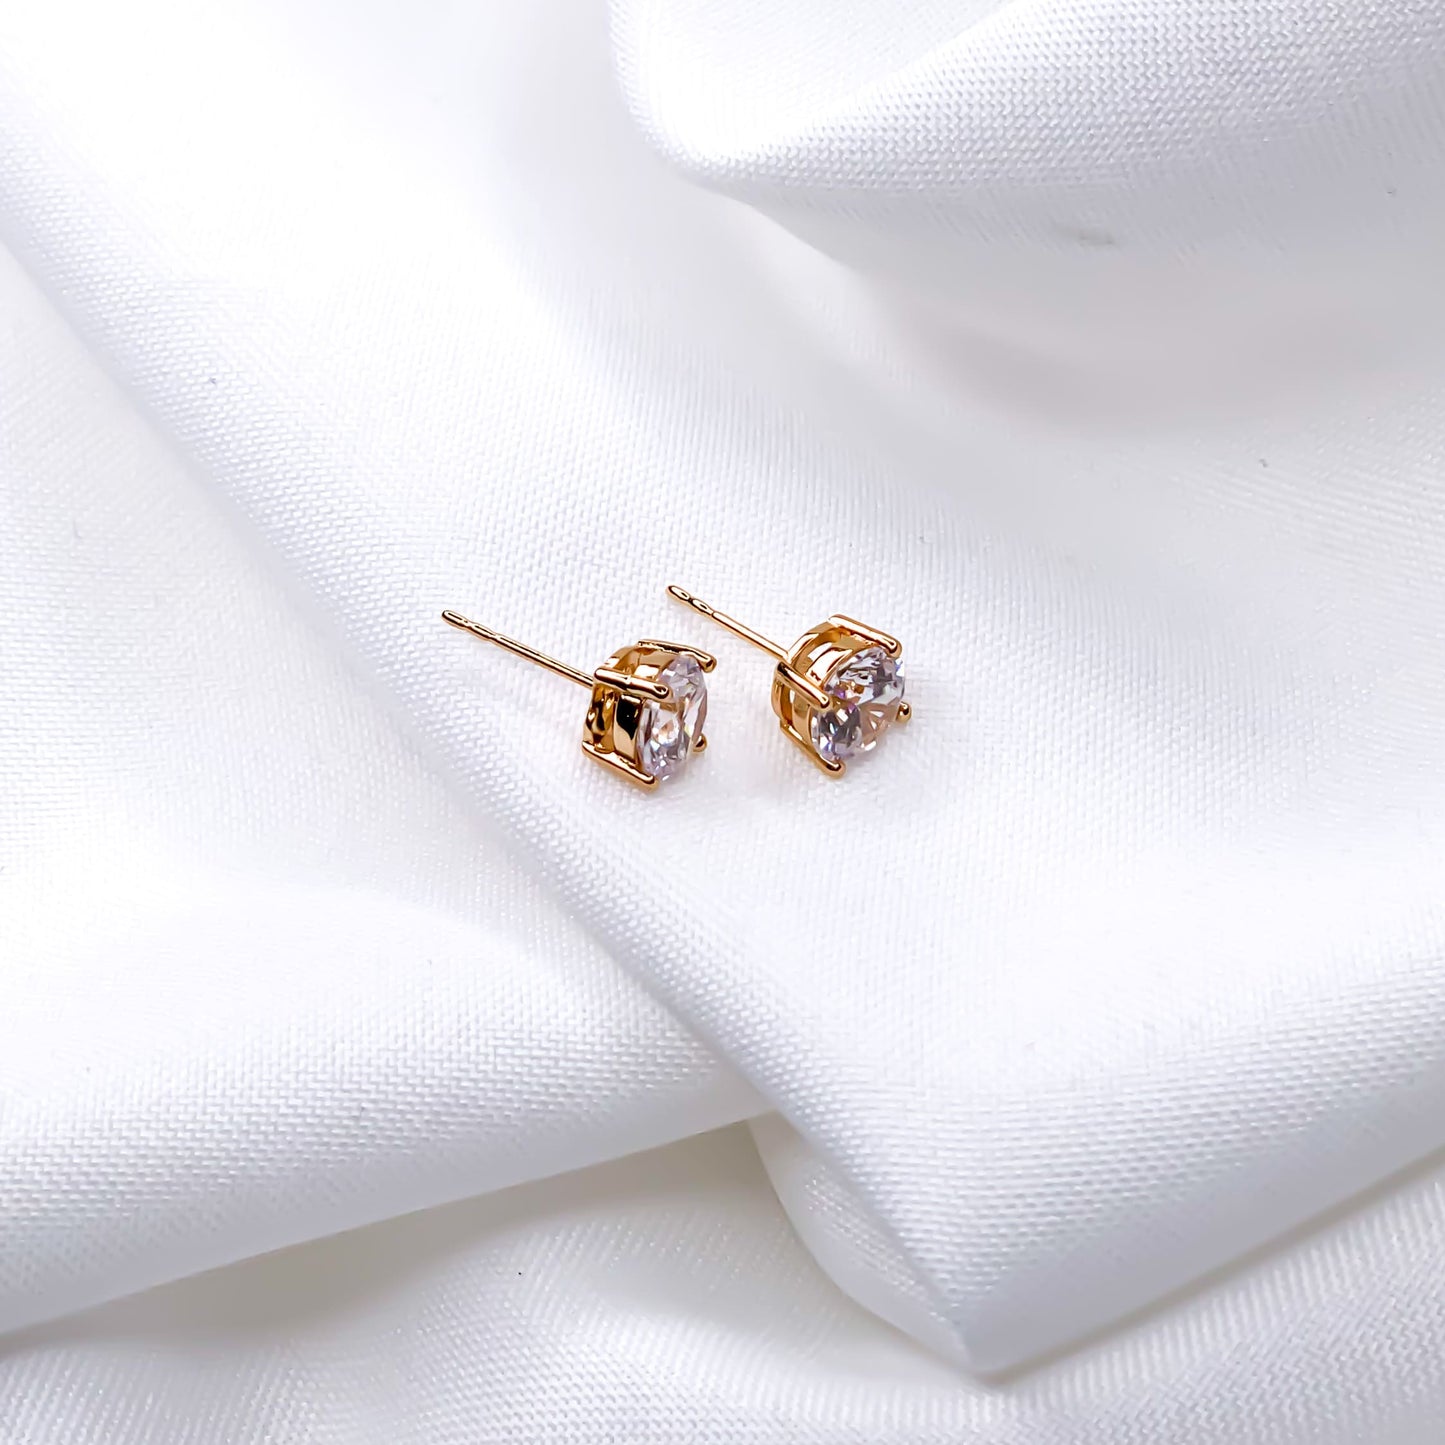 8mm gold cubic zirconia stud earrings